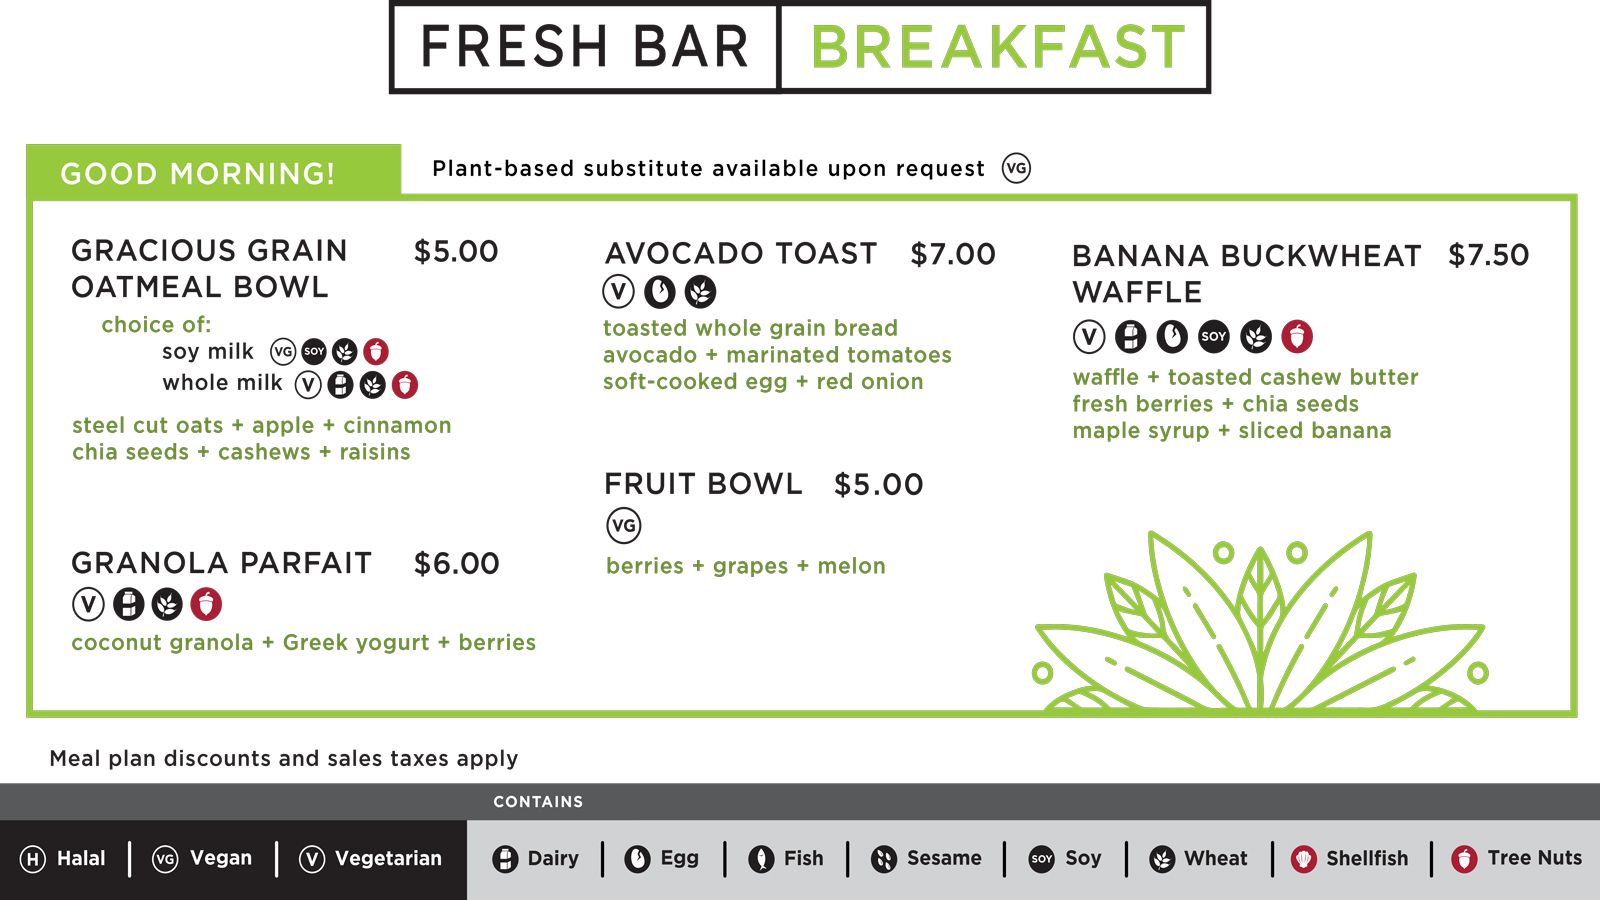 The main breakfast menu board for Fresh Bar